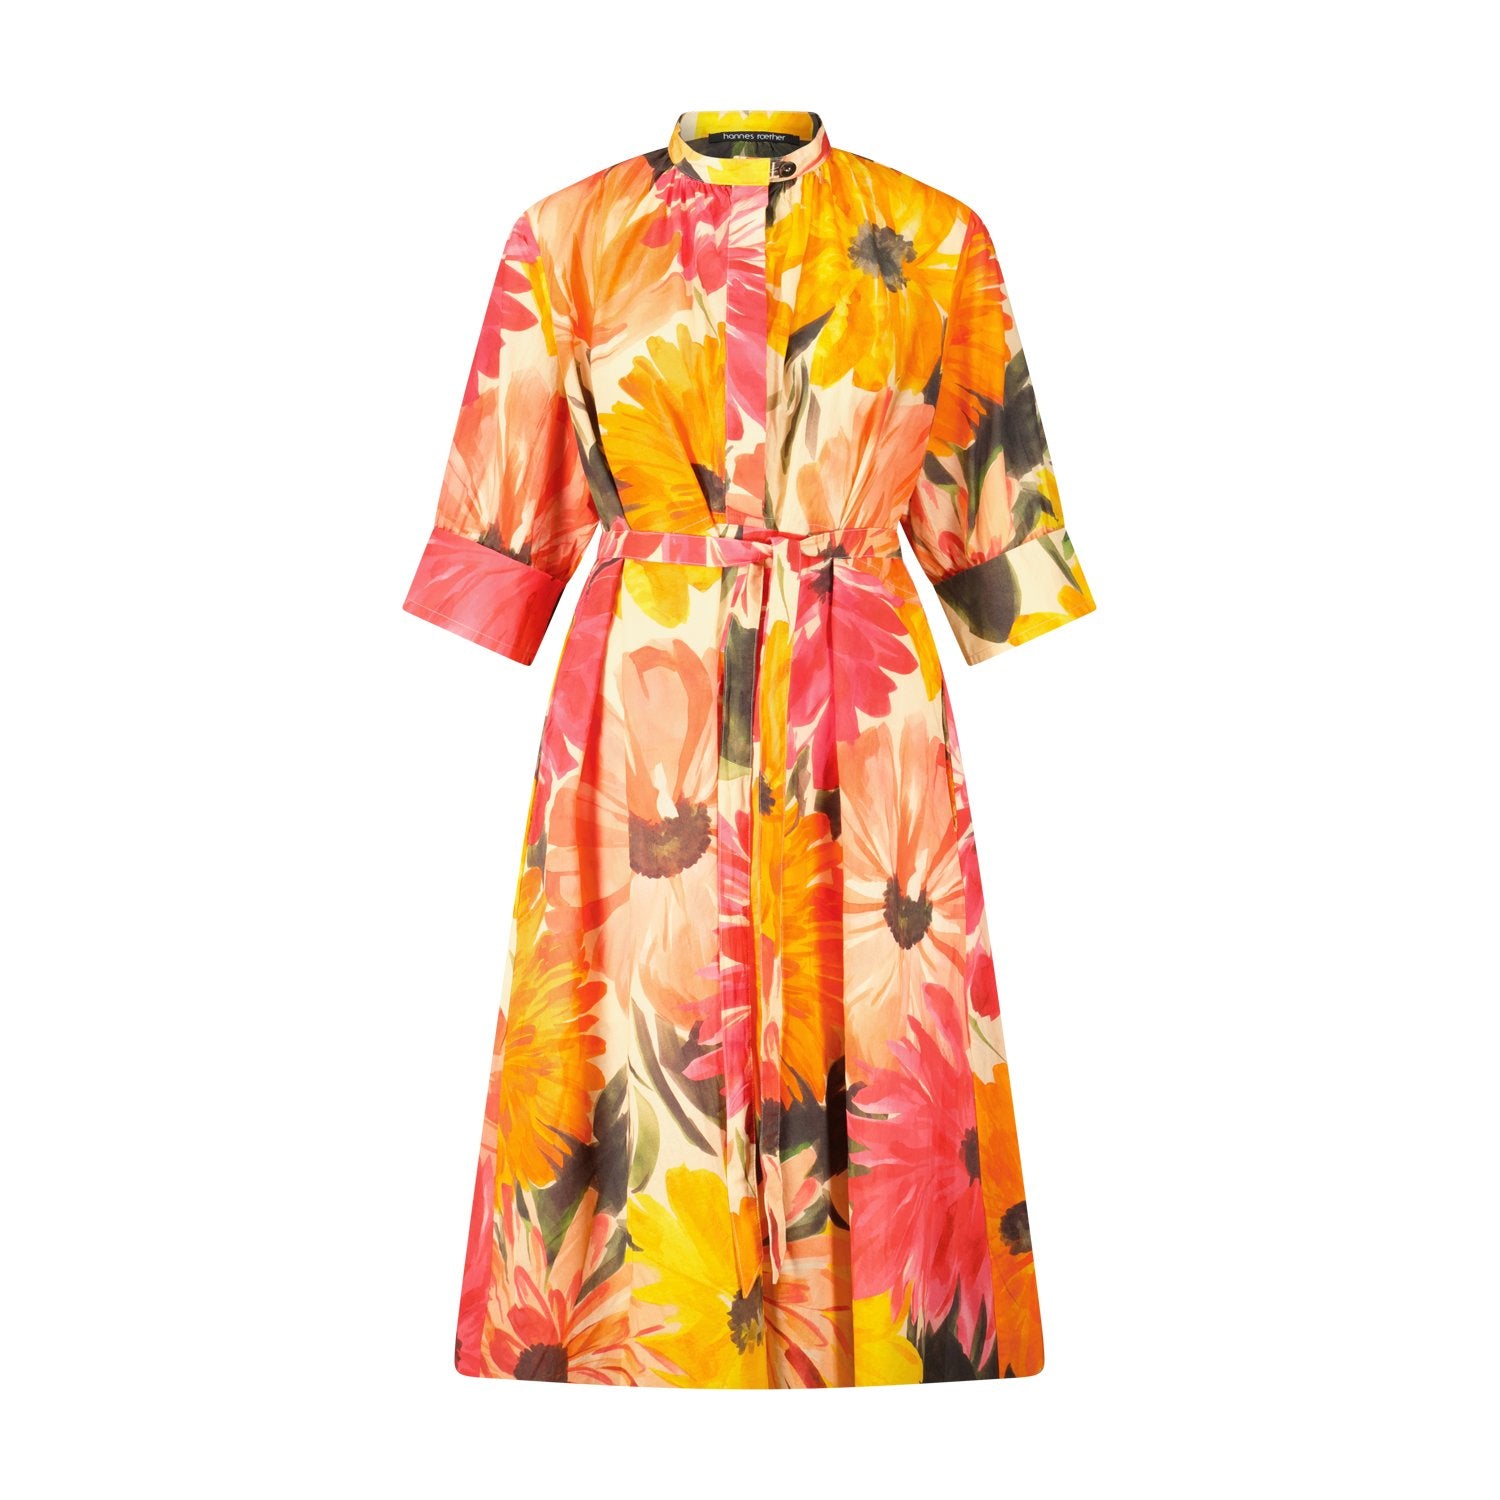 Blusenkleid mit farbenfrohem Blumenprint